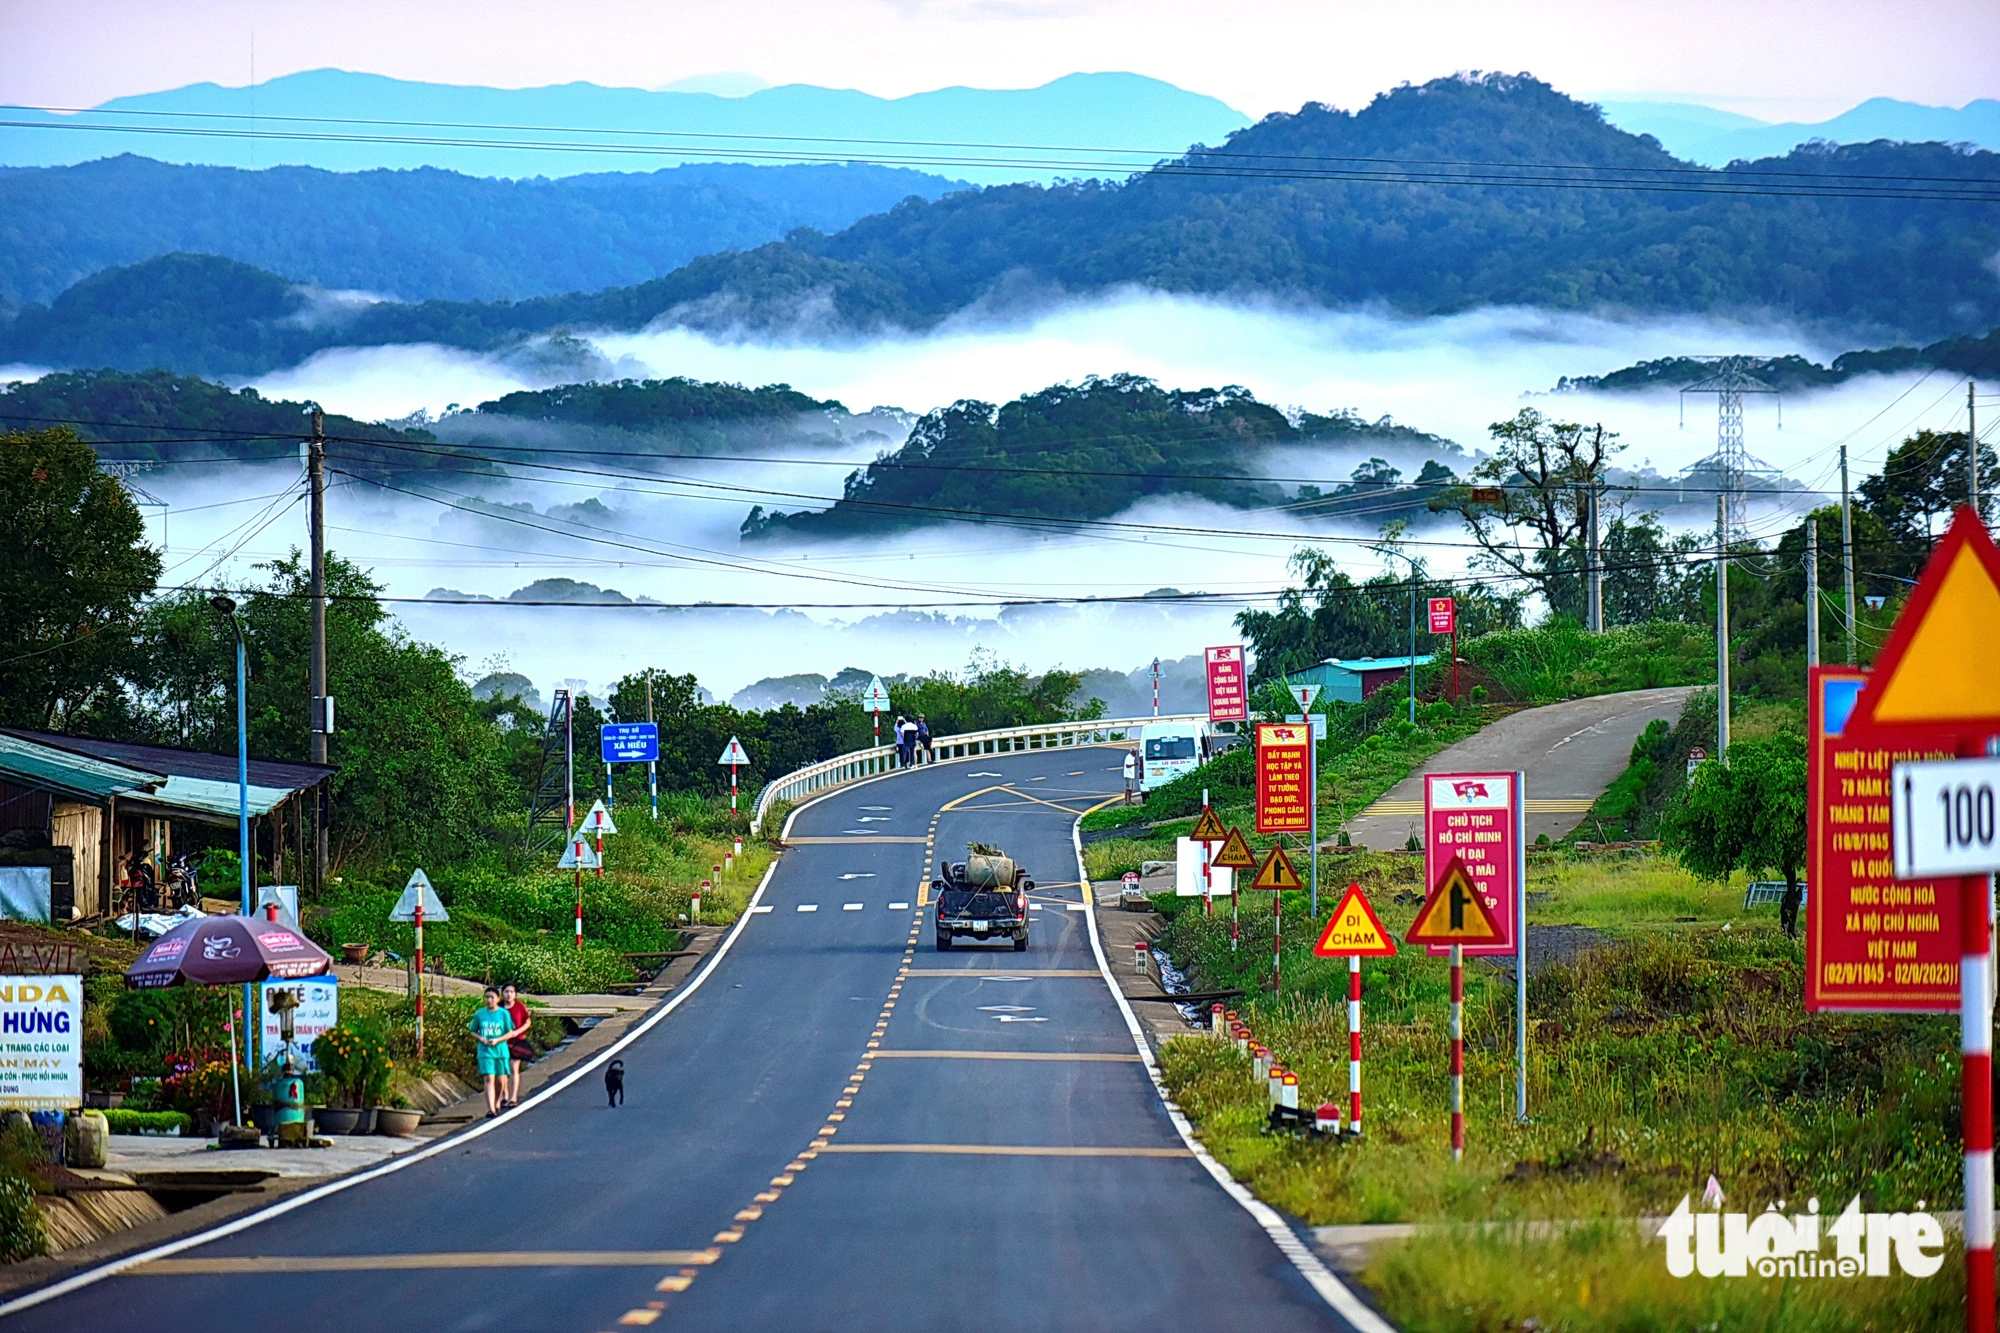 Đường mây trên quốc lộ 24 chụp vào buổi chiều muộn tại khu vực Trường THCS Xã Hiếu, huyện Kon Plông, (tỉnh Kon Tum) - Ảnh: T.T.D.